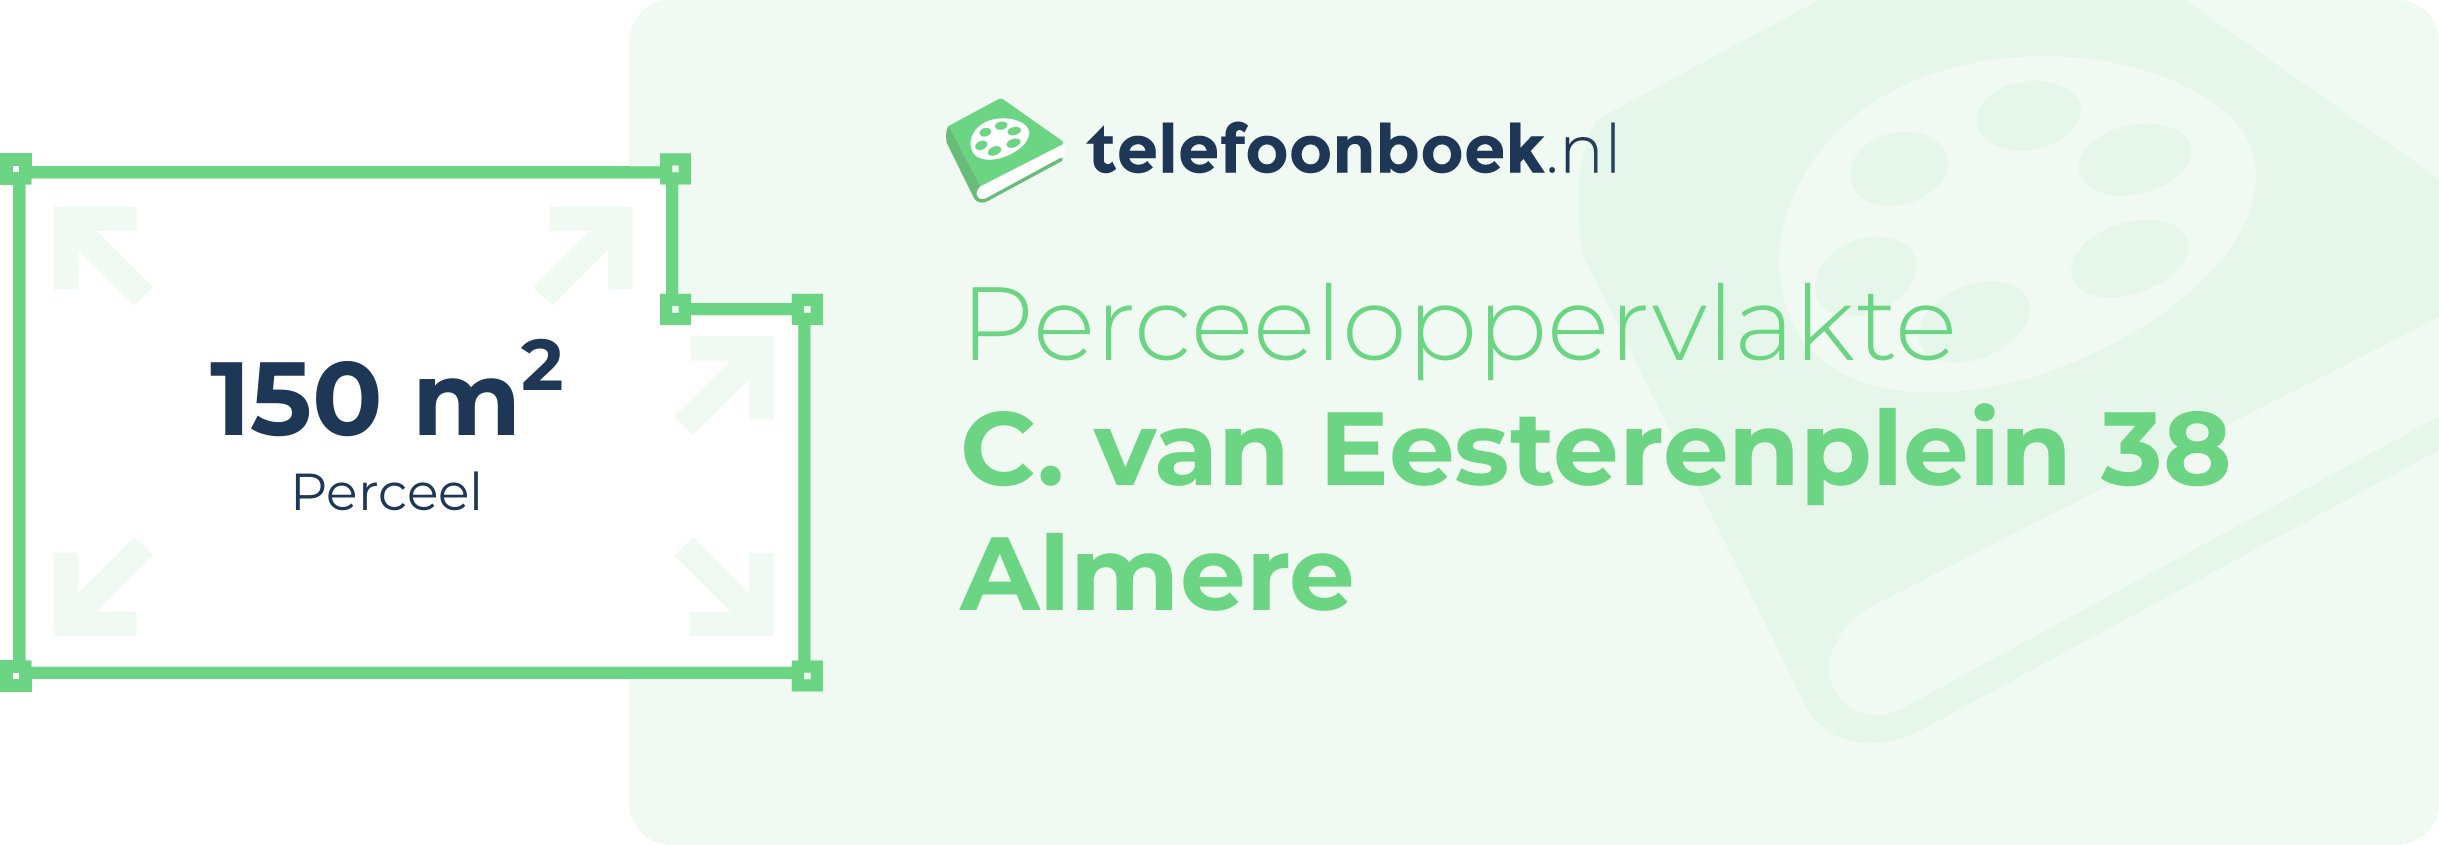 Perceeloppervlakte C. Van Eesterenplein 38 Almere